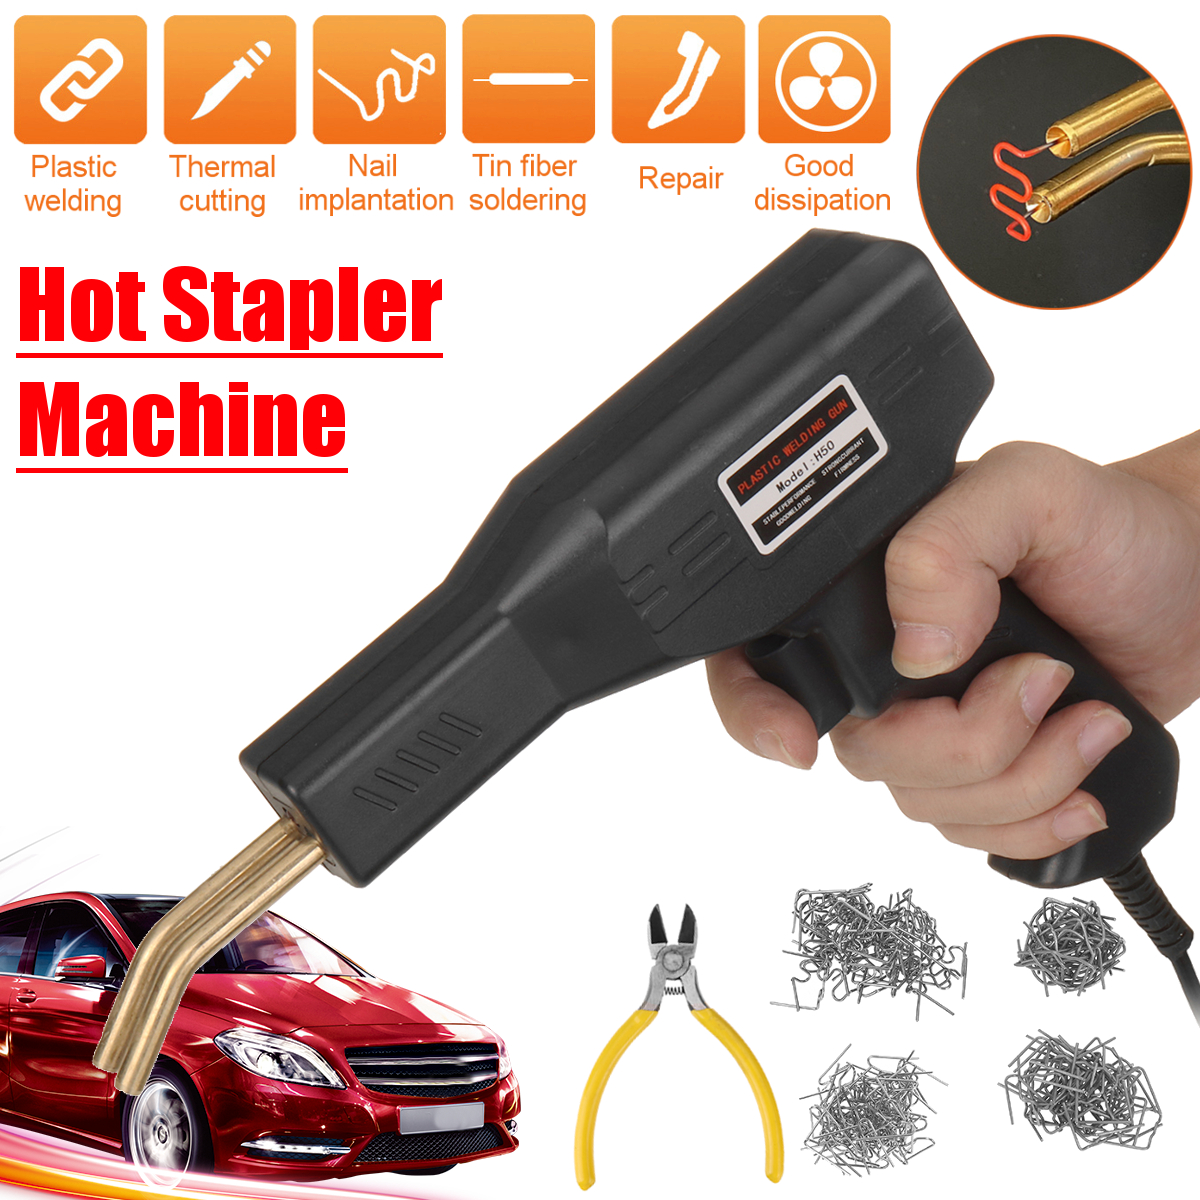 Plastic-Welding-Machine-Car-Bumper-Hot-Stapler-Plastic-Welding-Torch-Fairing-Auto-Body-Tool-Repair-S-1848002-4